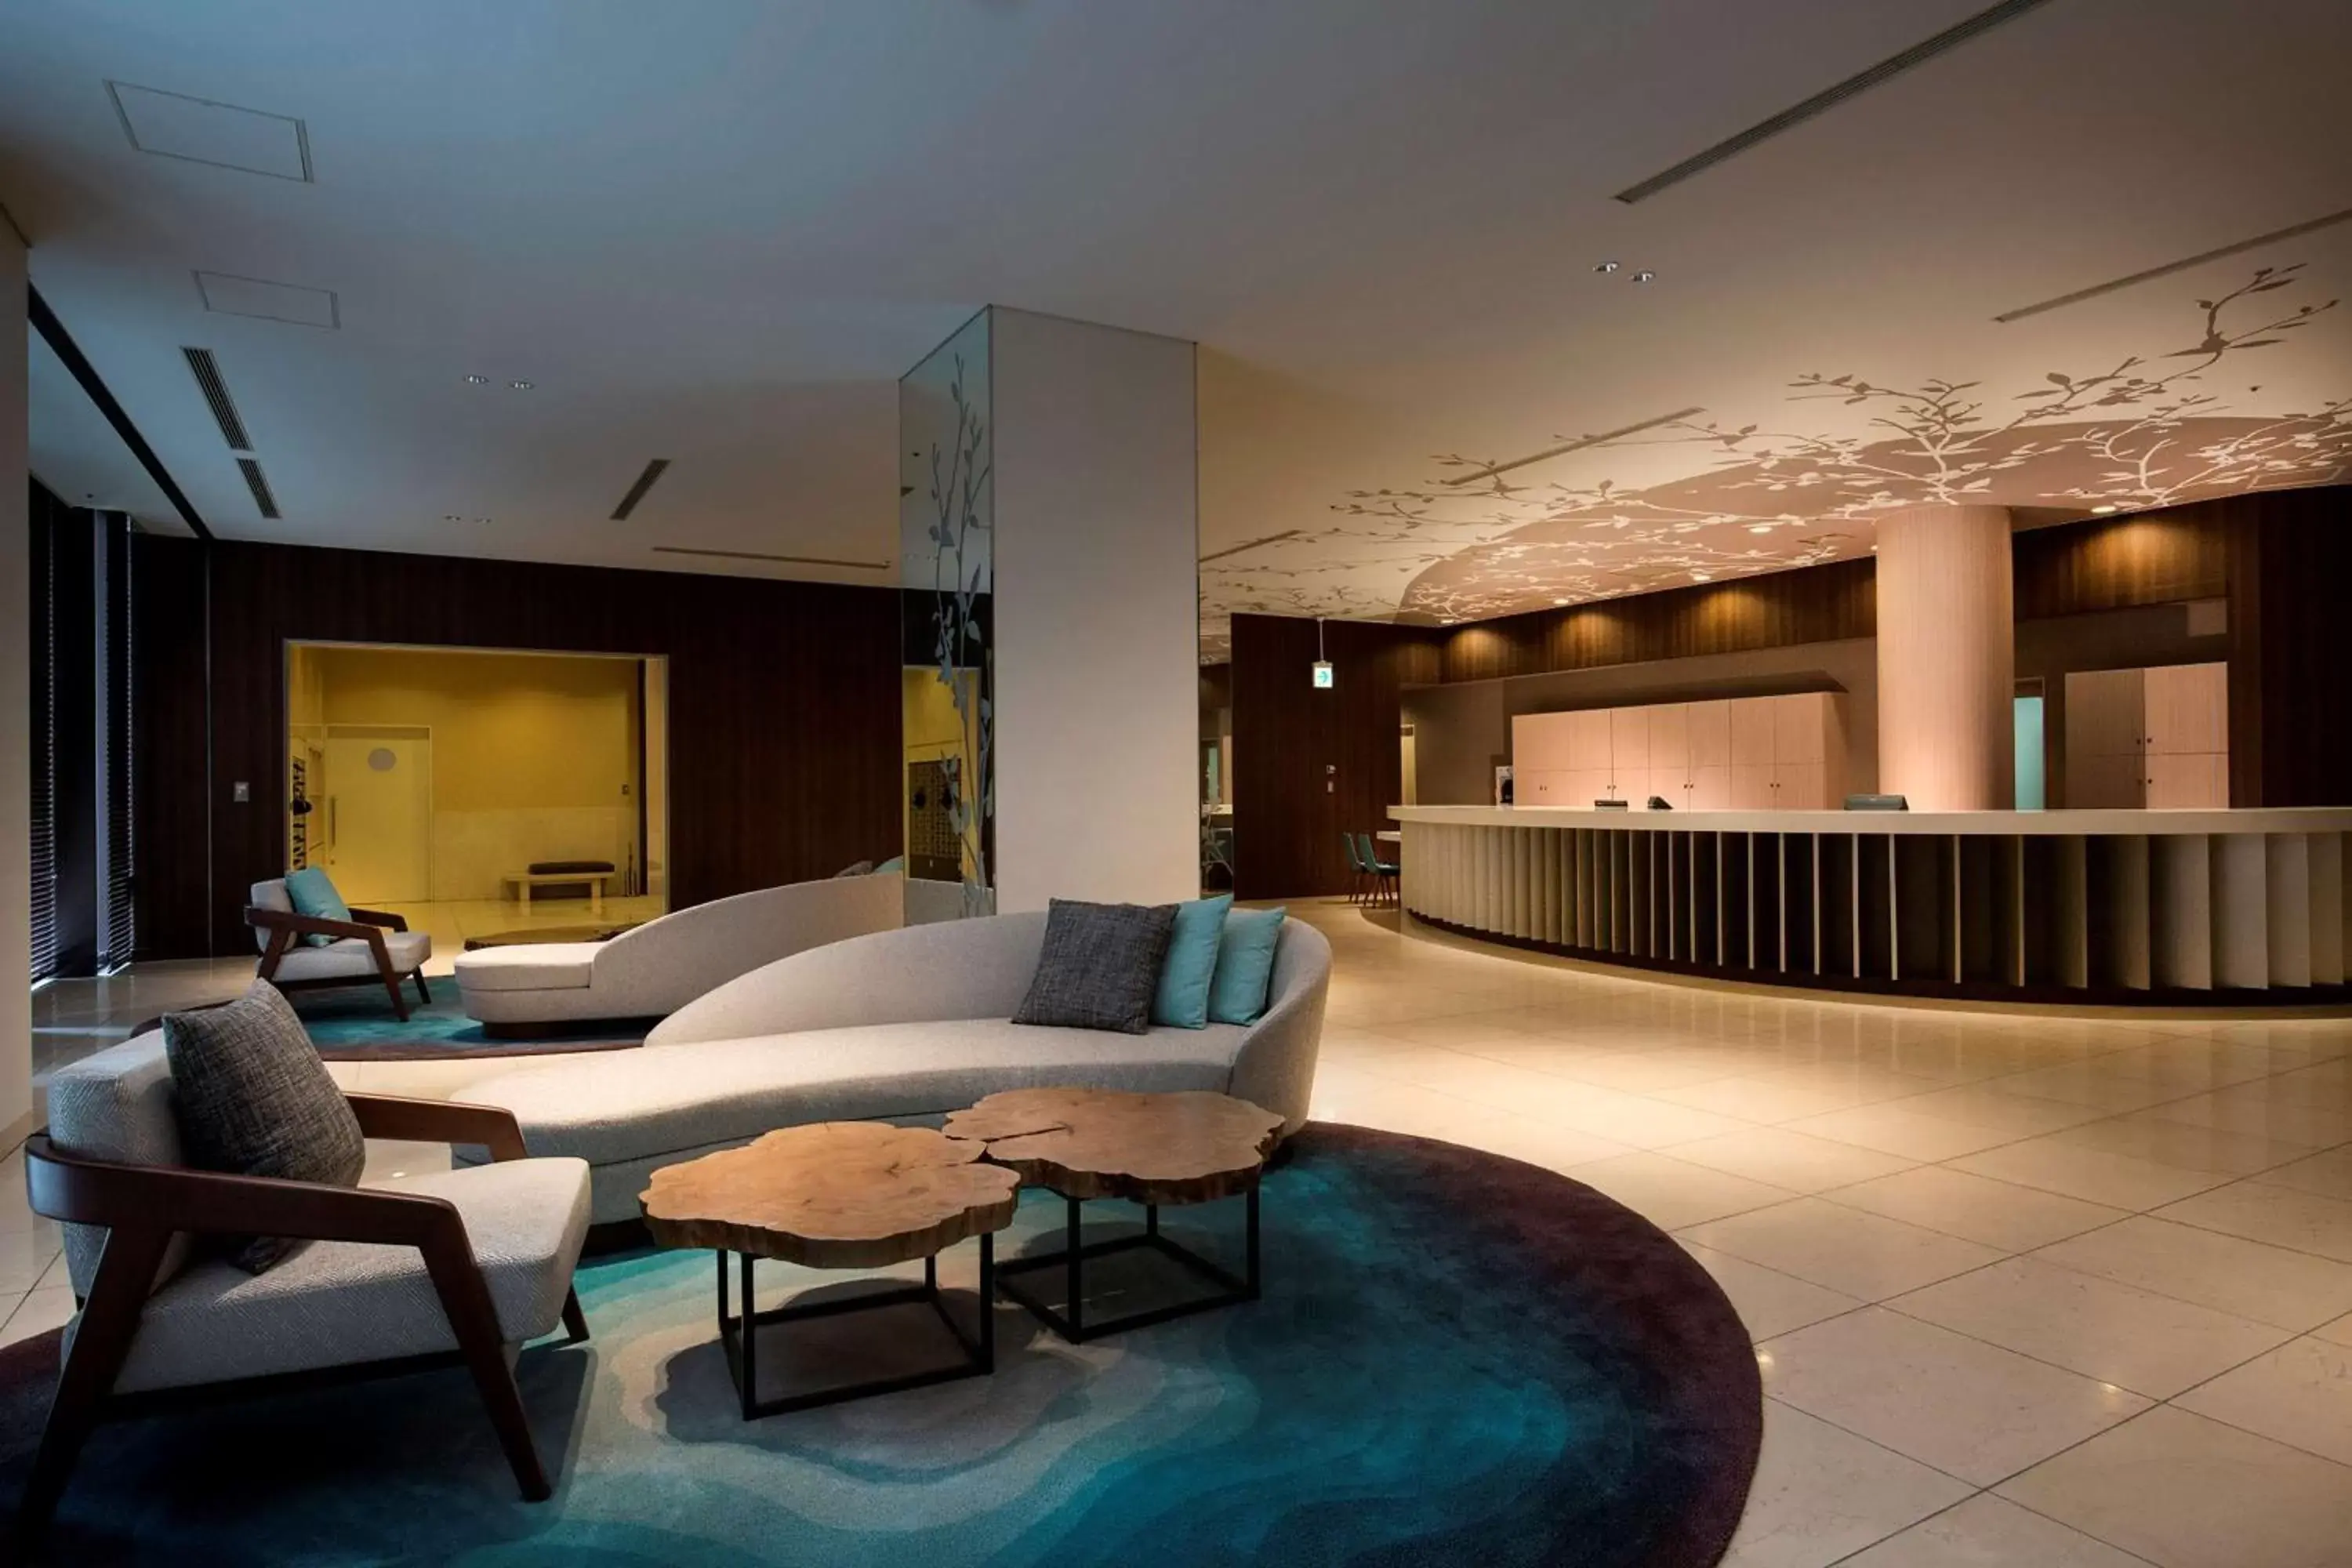 Lobby or reception, Lobby/Reception in Hilton Odawara Resort & Spa